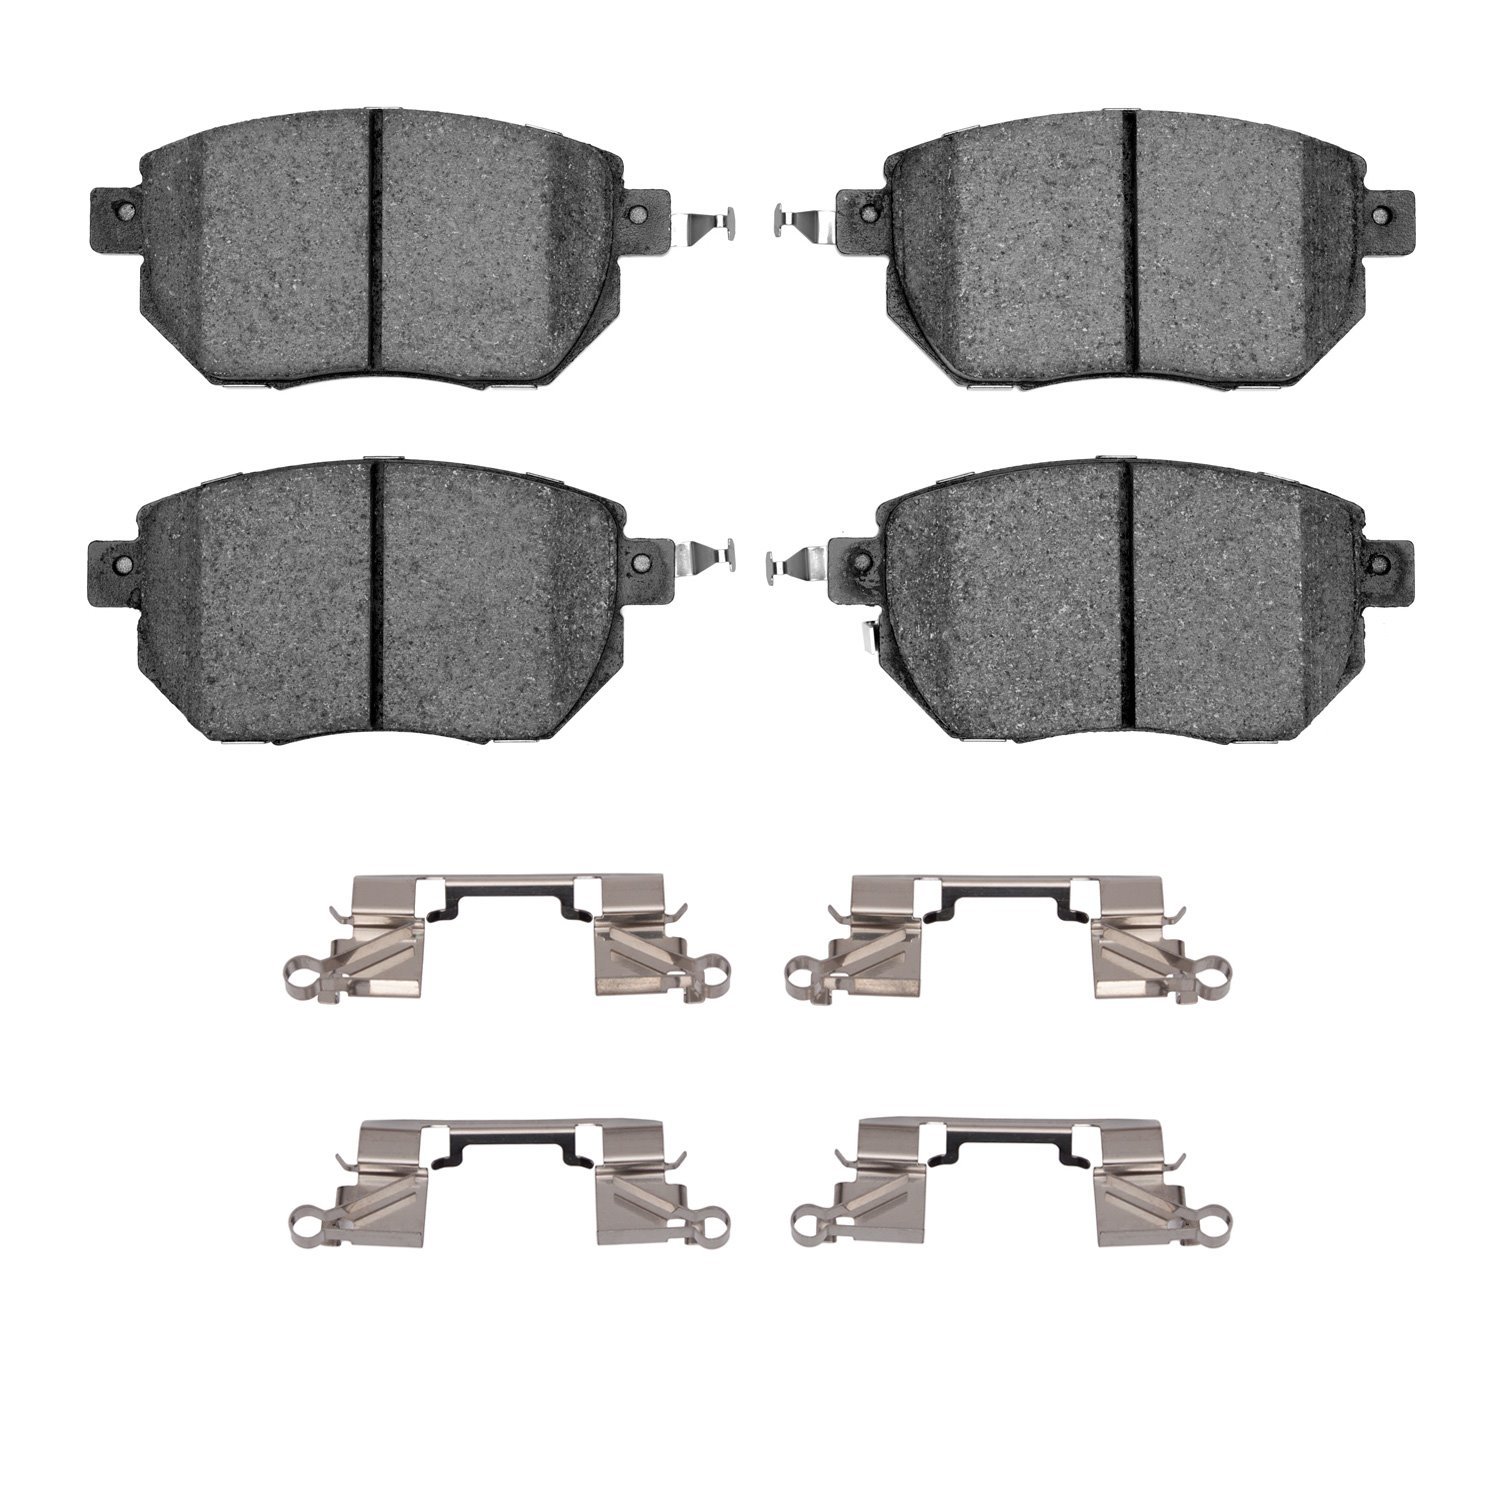 1311-0969-01 3000-Series Semi-Metallic Brake Pads & Hardware Kit, 2003-2011 Infiniti/Nissan, Position: Front